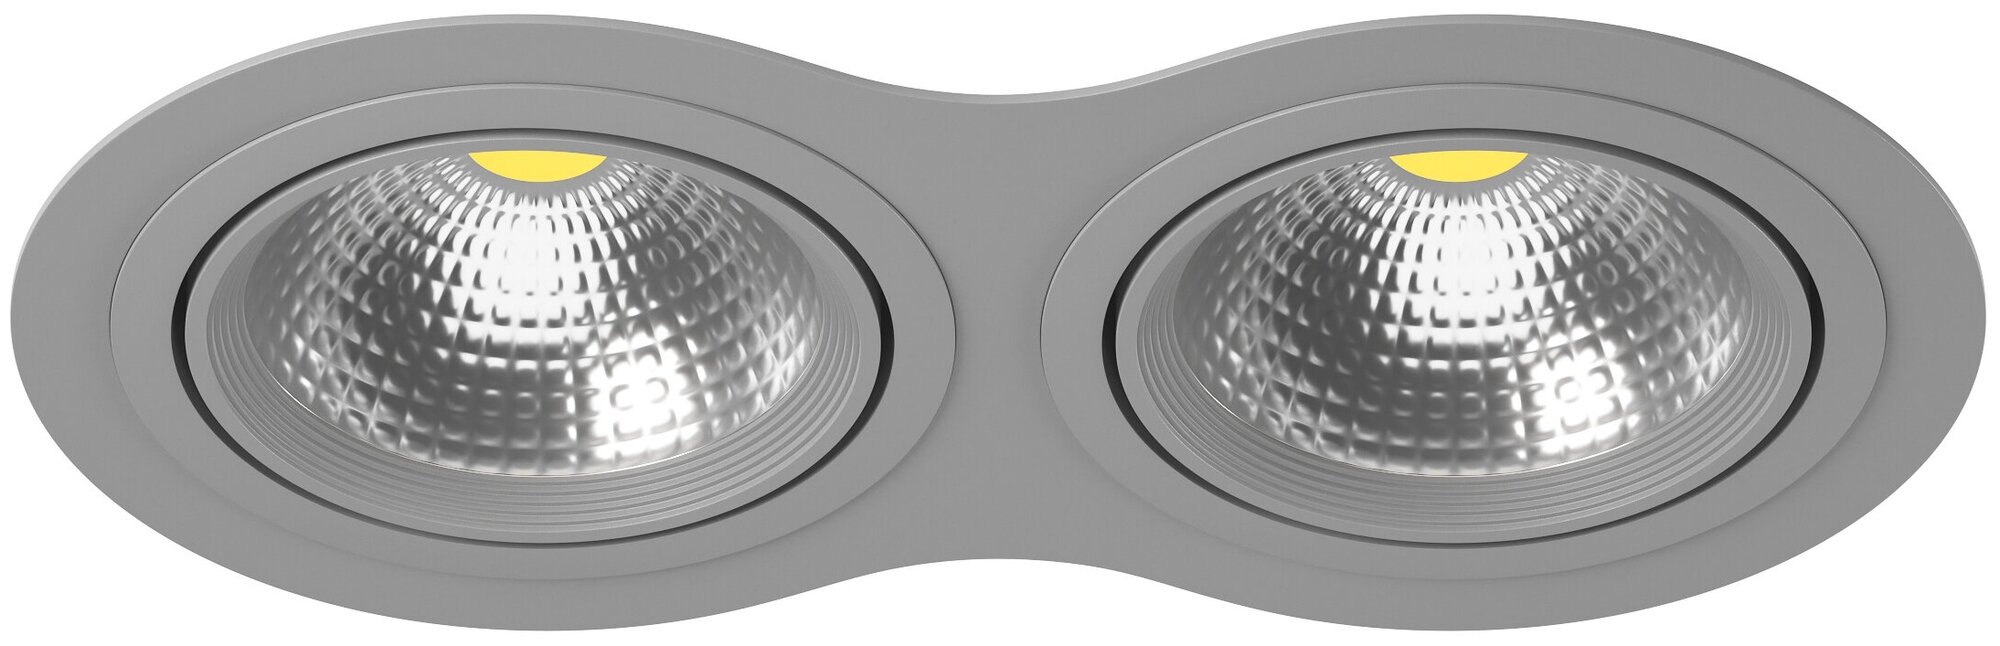 Точечный светильник встроенный серый Lightstar Intero 111 i9290909